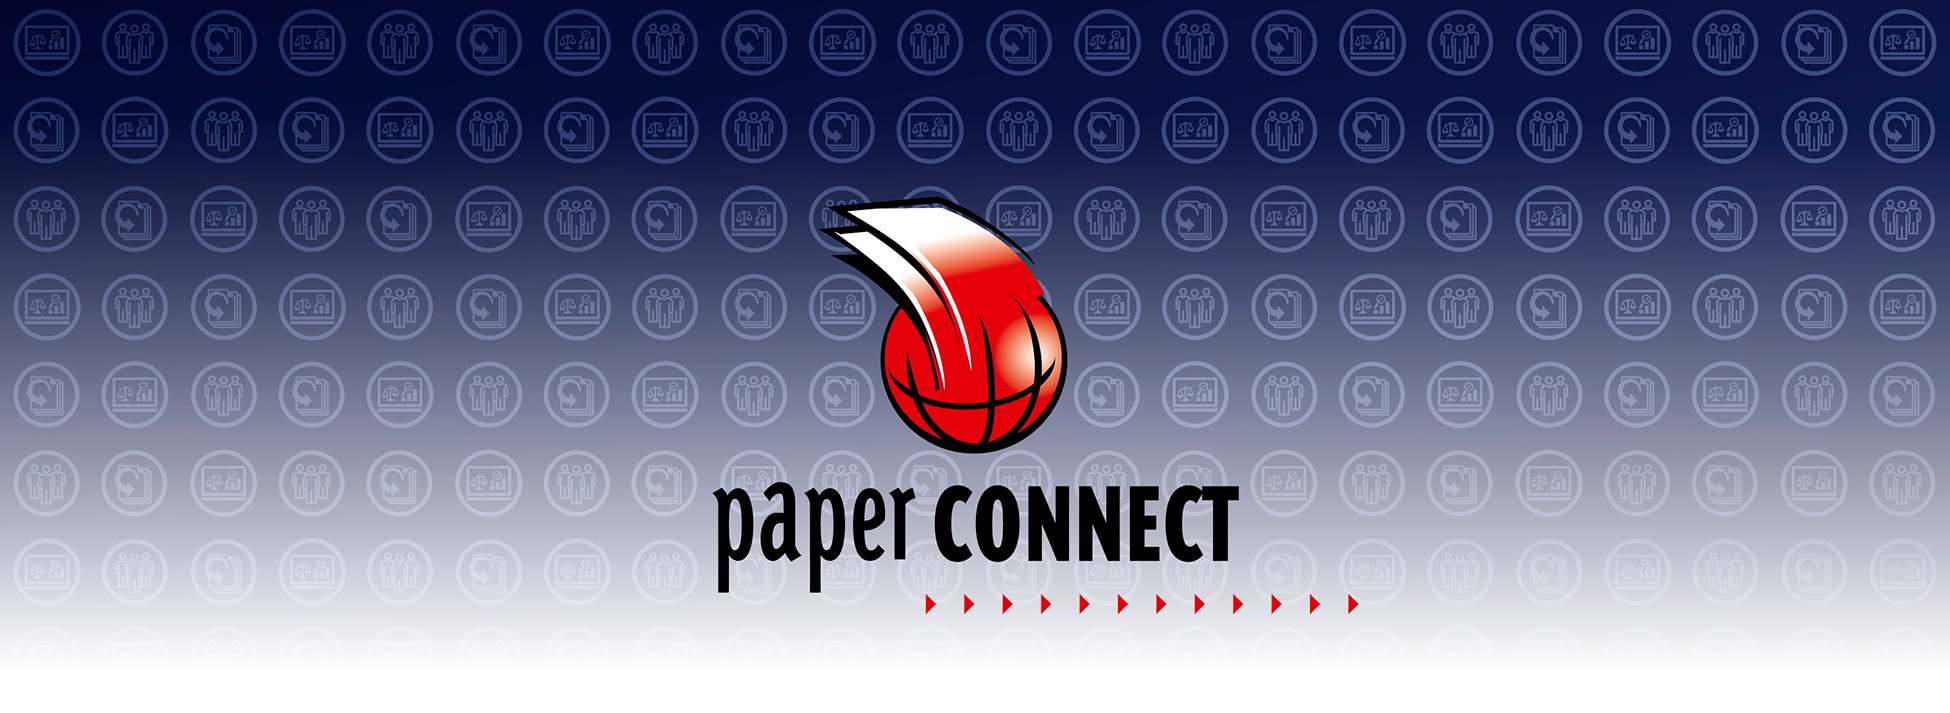 Das Paperconnect-Logo vor einem blauen Hintergrund, auf welchem die Icons der Paperconnect-Produkte "Einkaufsmanager Papier", "Einkaufsallianz" und "Altpapiermanager" abgebildet sind.